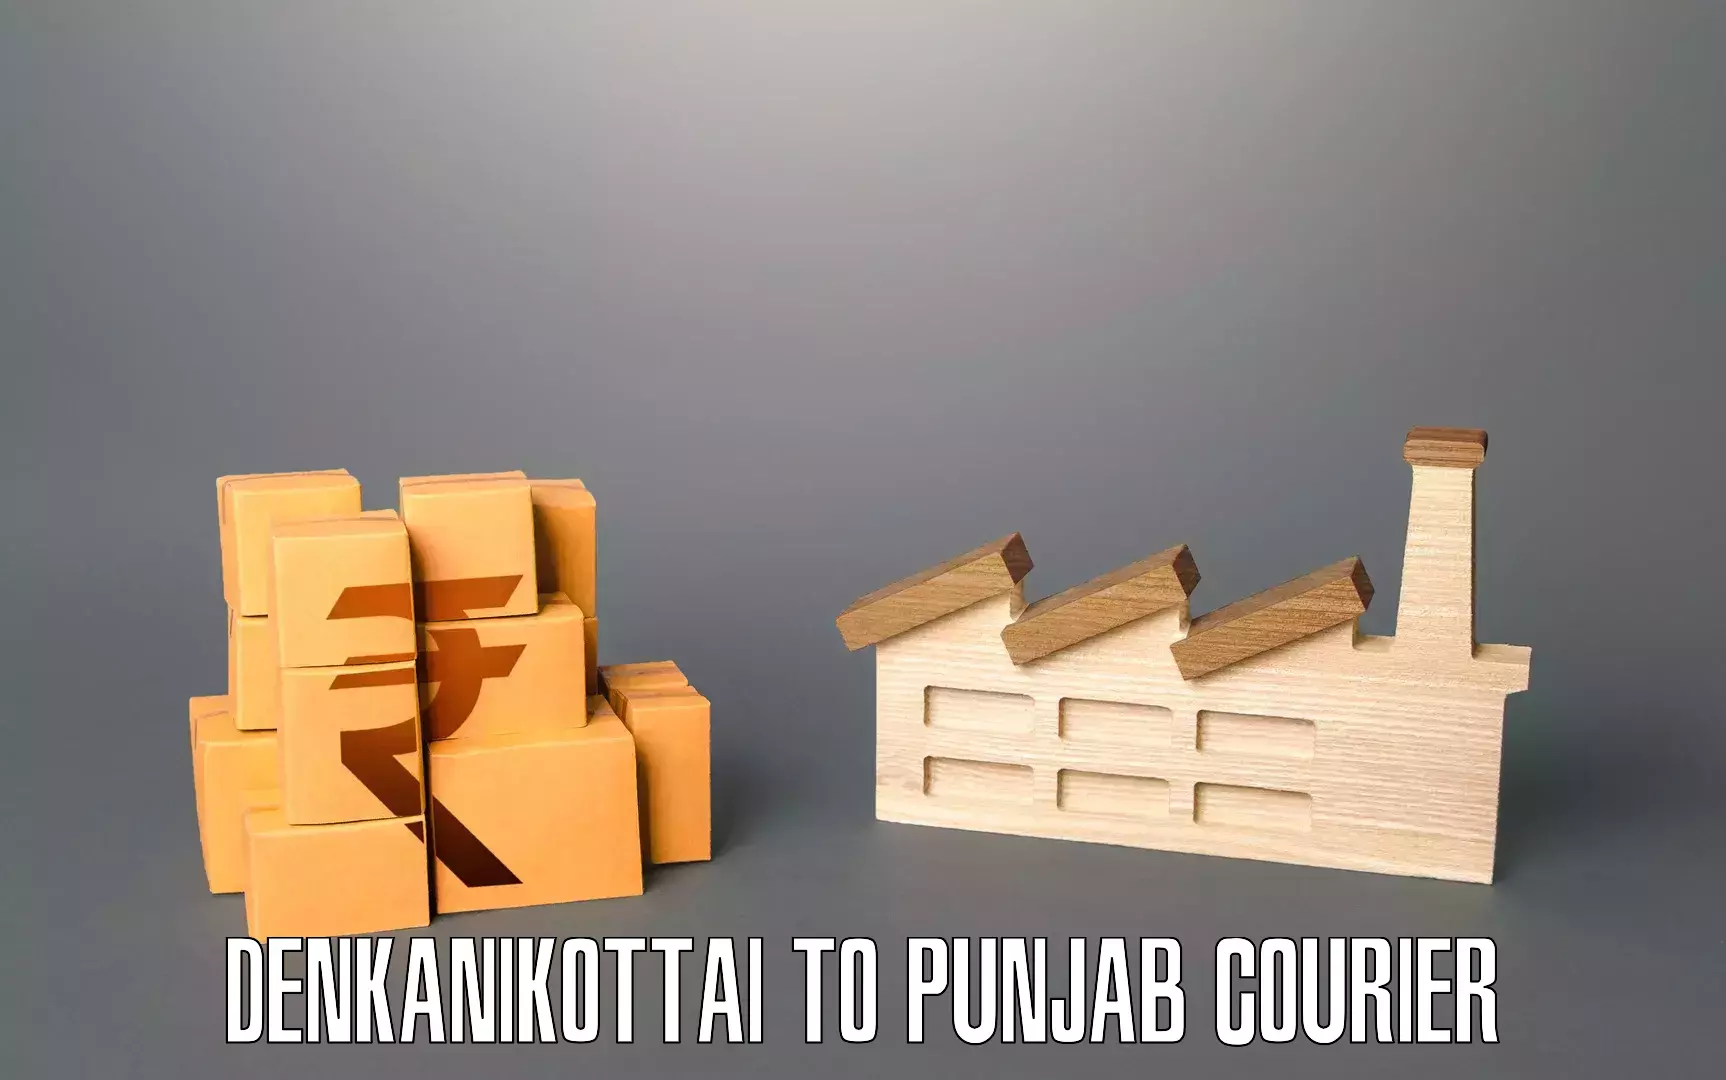 Reliable movers Denkanikottai to Punjab